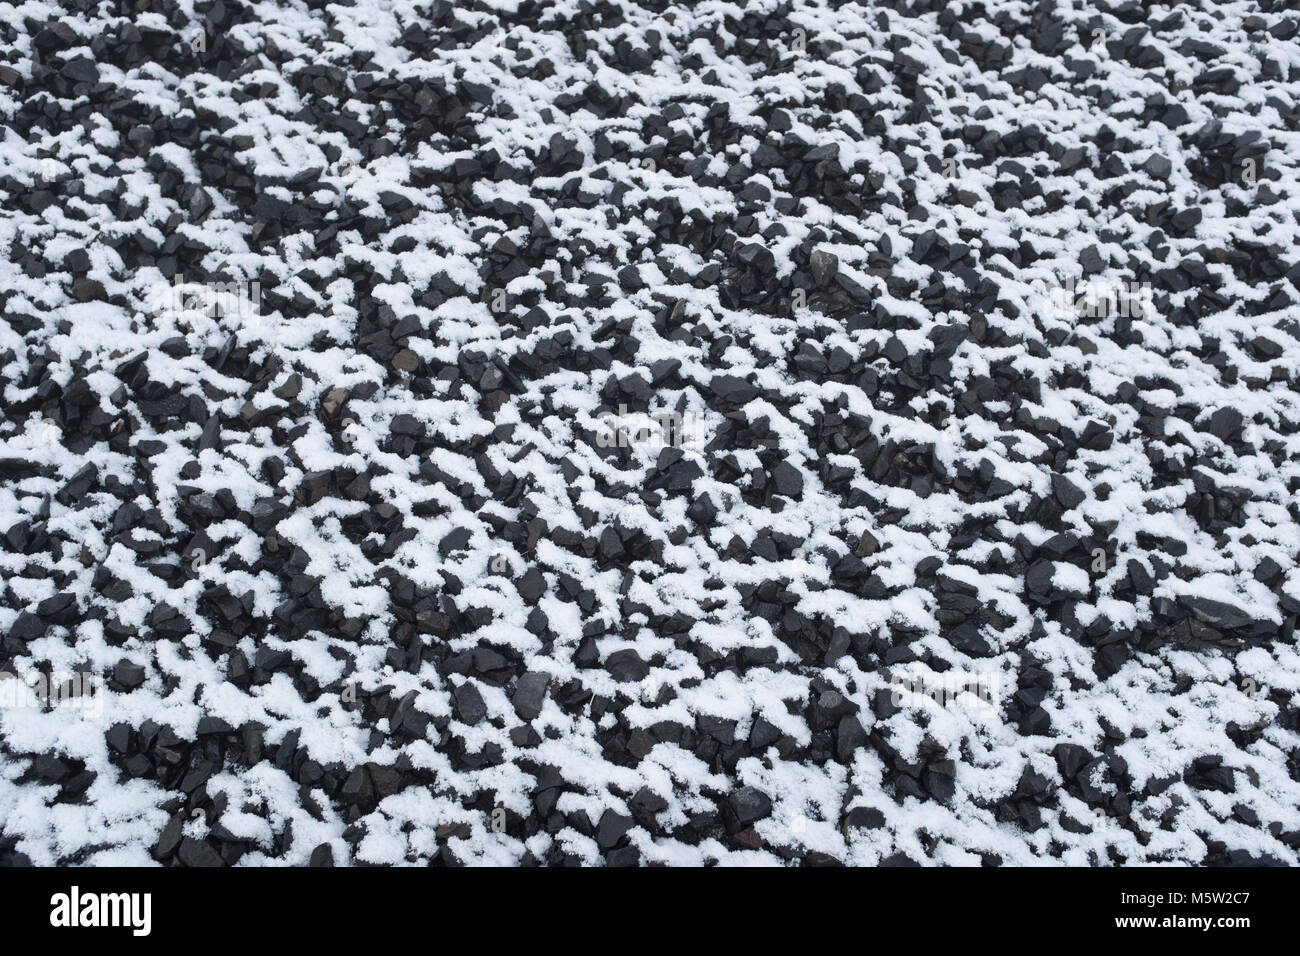 La nieve sobre la tierra - 50% de blancos, un 50% de negro. Rugoso sin agregar color de fondo Foto de stock